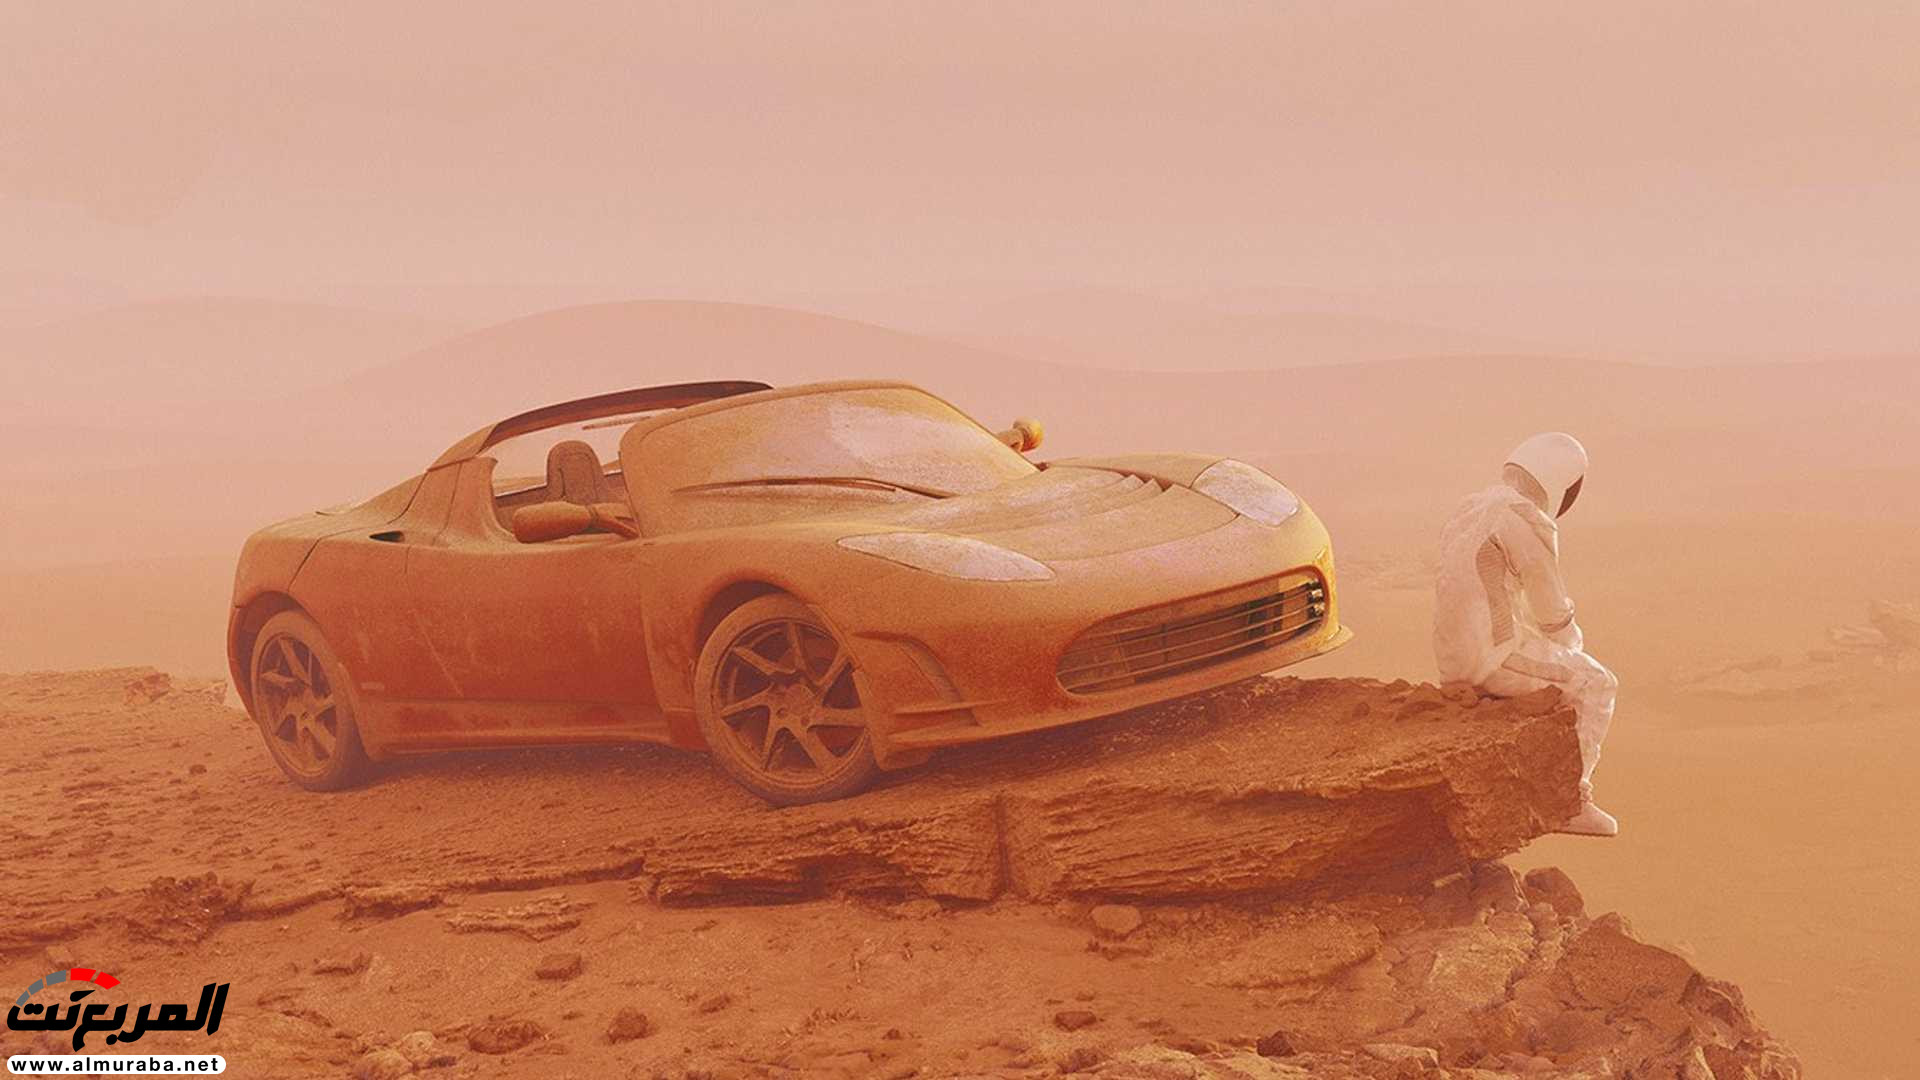 تيسلا رودستر وصلت إلى المريخ في صور تخيلية 15